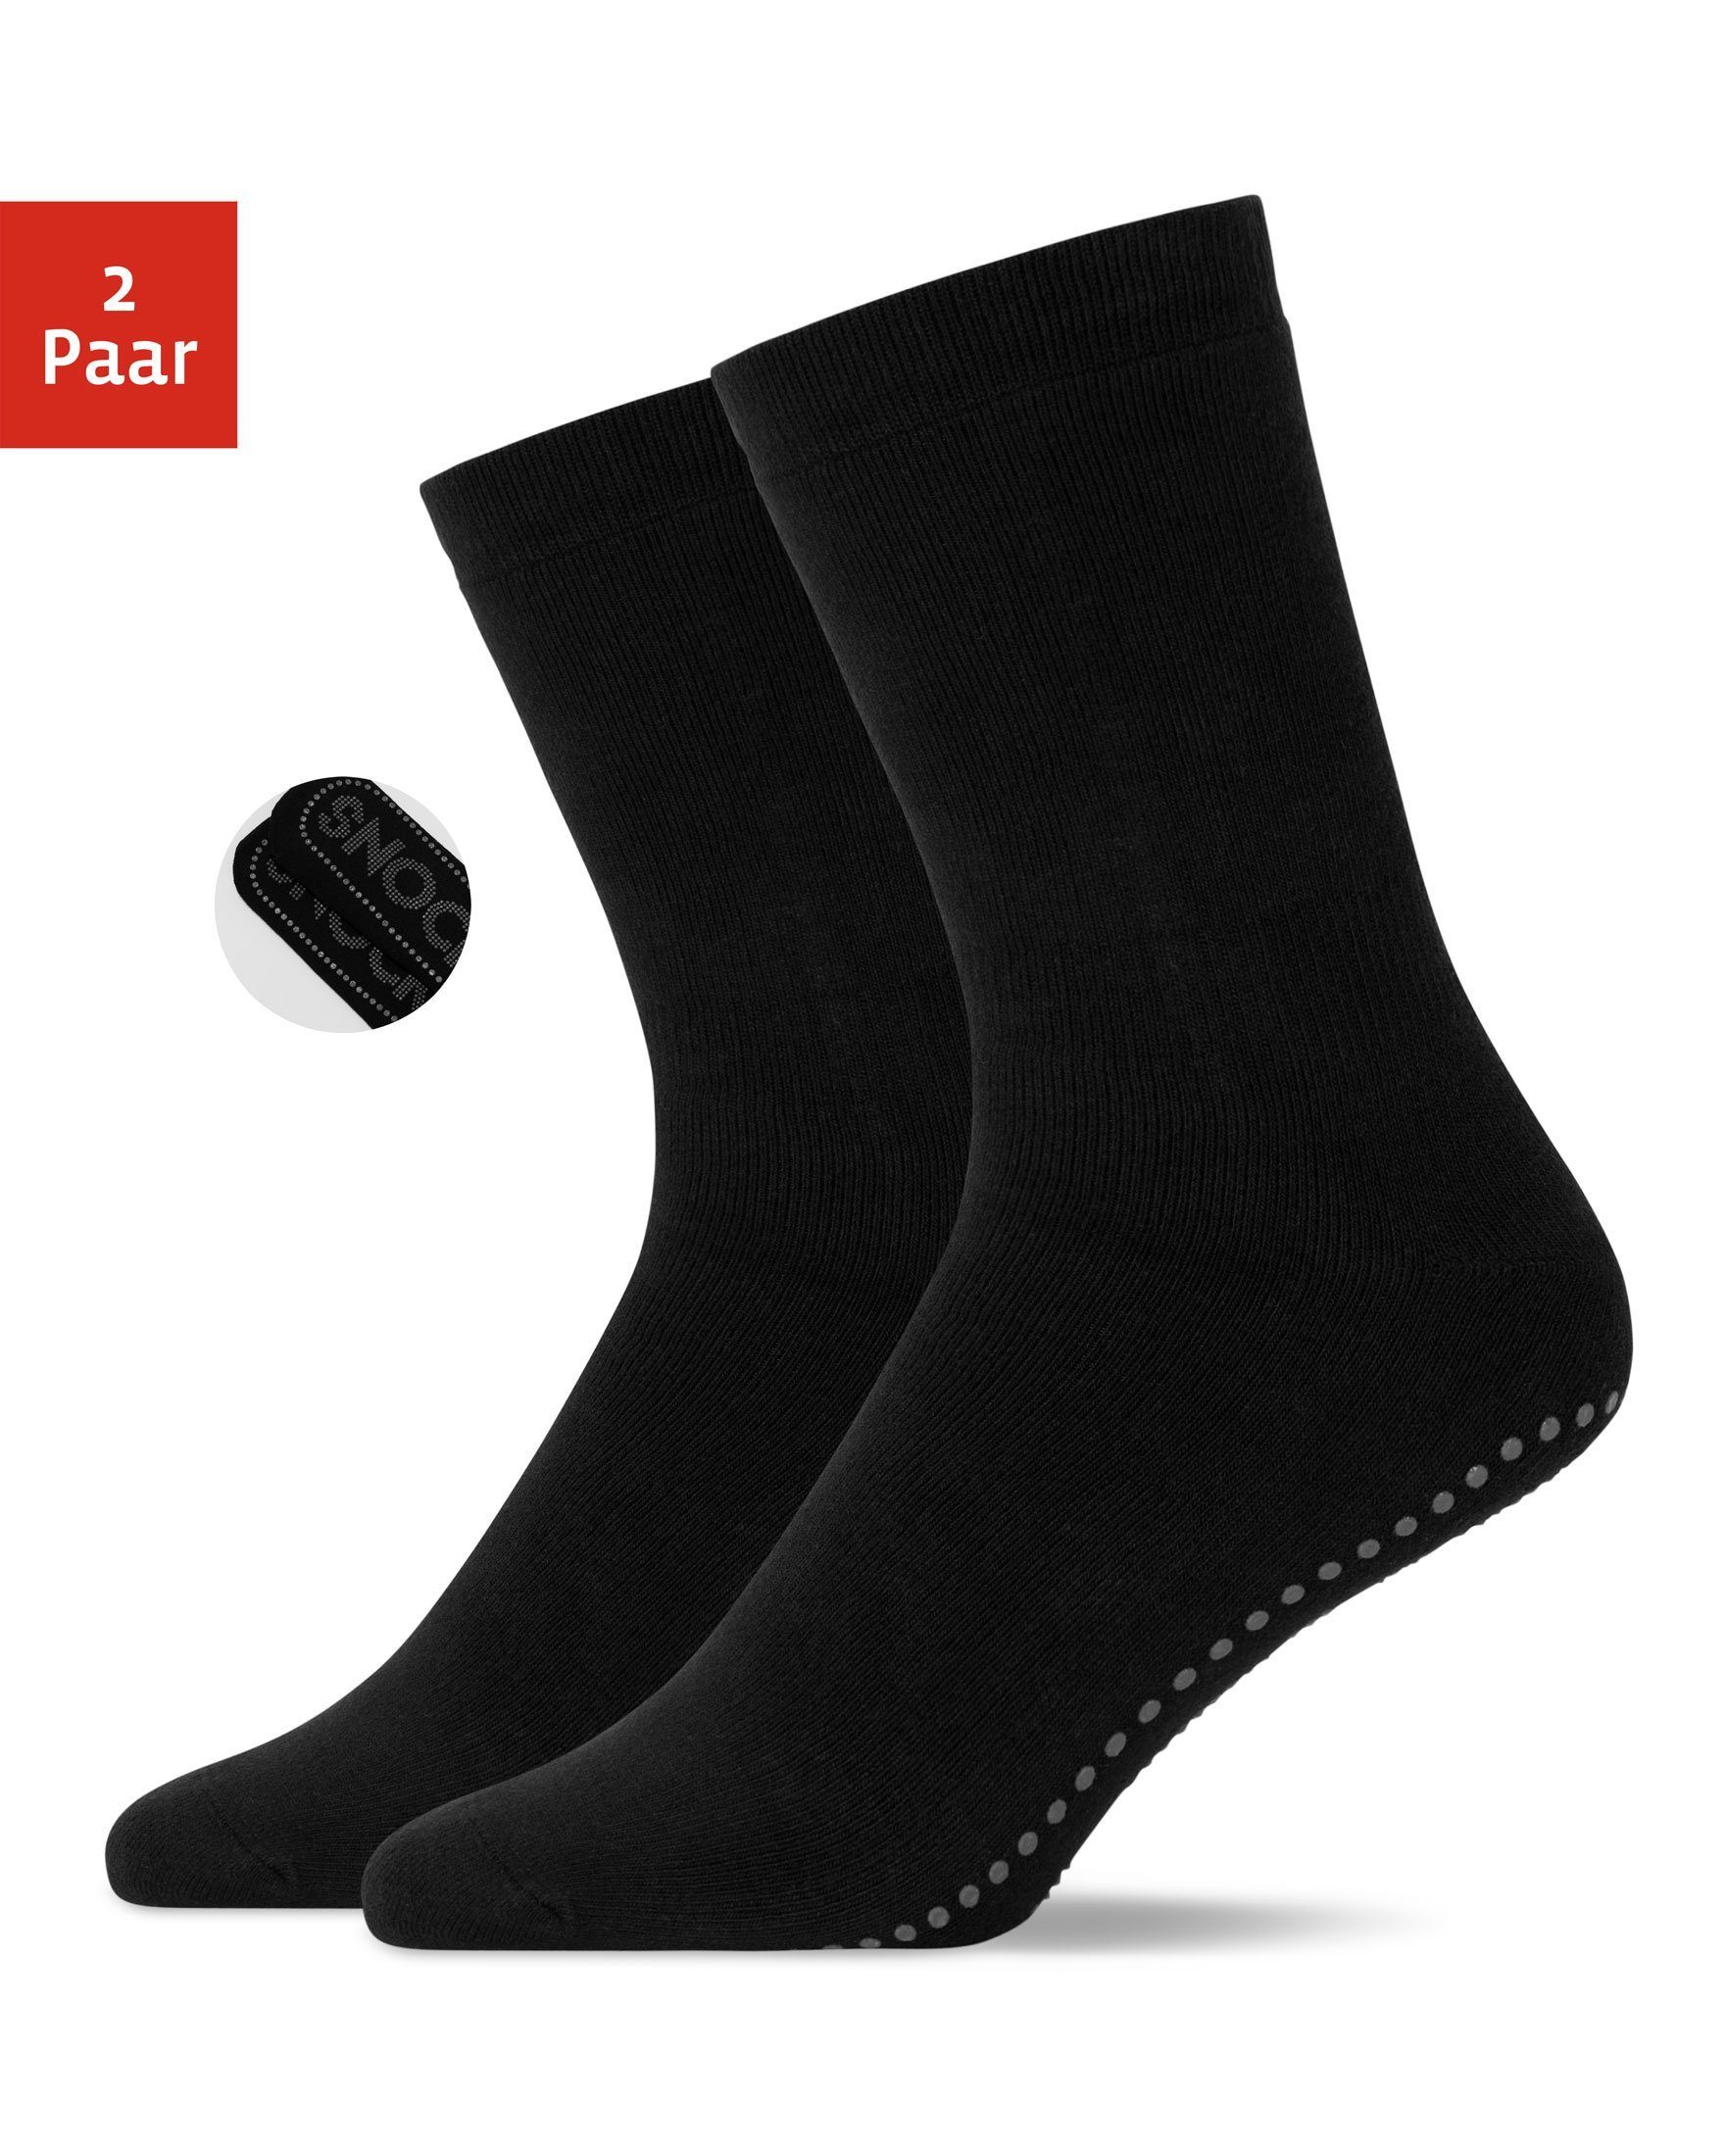 Wäsche/Bademode Socken SNOCKS ABS-Socken Anti-Rutsch Socken Damen & Herren ABS Socken (2-Paar) aus Bio-Baumwolle, Anti-Rutsch